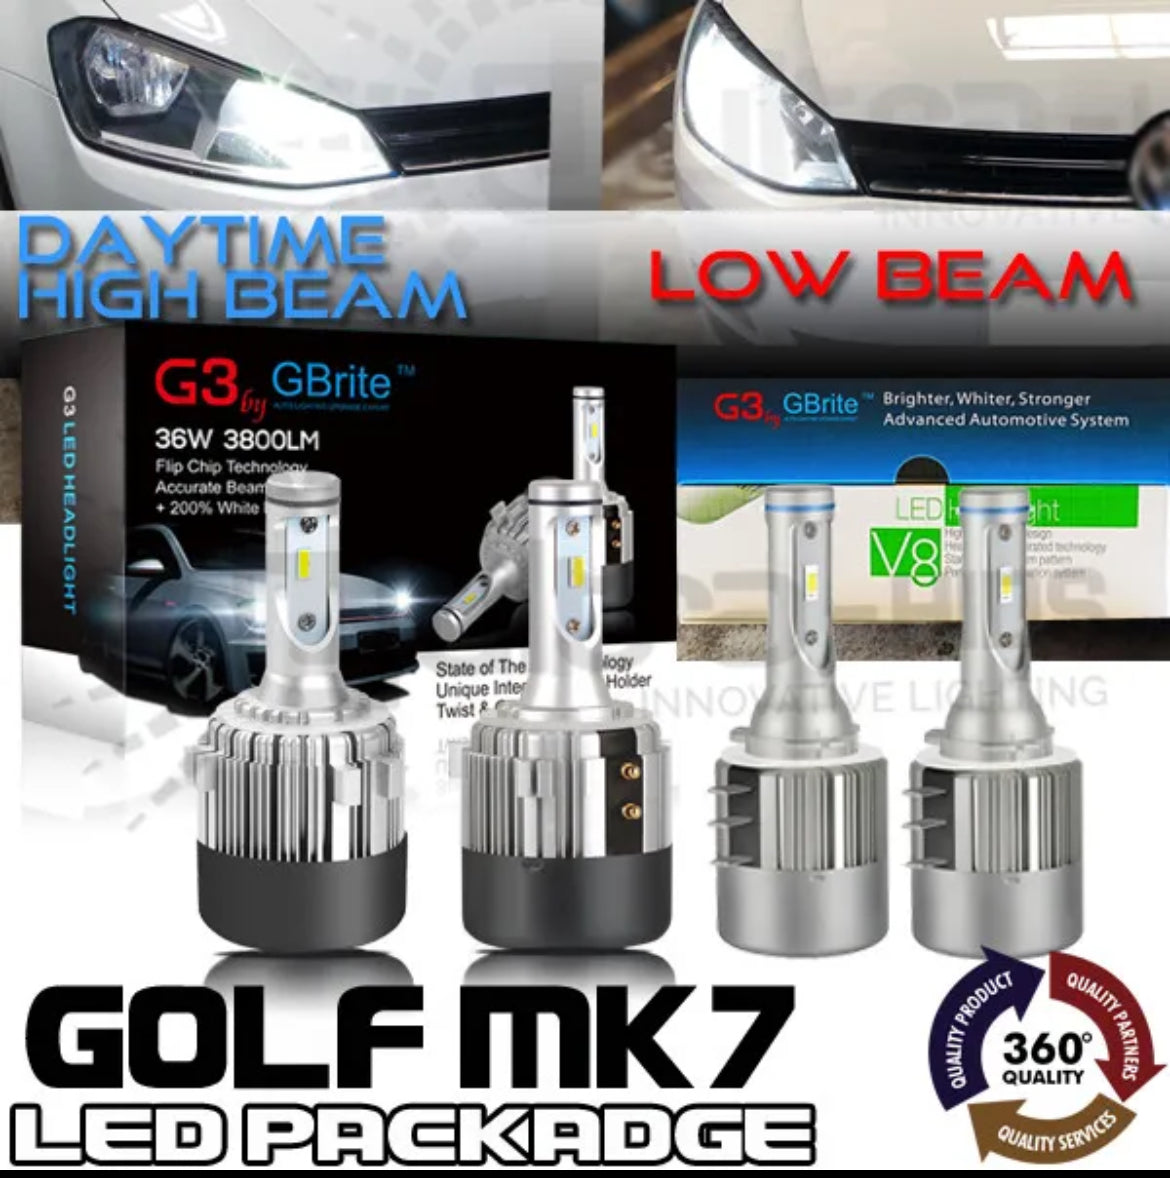 VW GOLF MK7  LED HEADLIGHT KIT V2 PACKAGE DRL SUPER HIGH BEAM FLASH  H15 H7